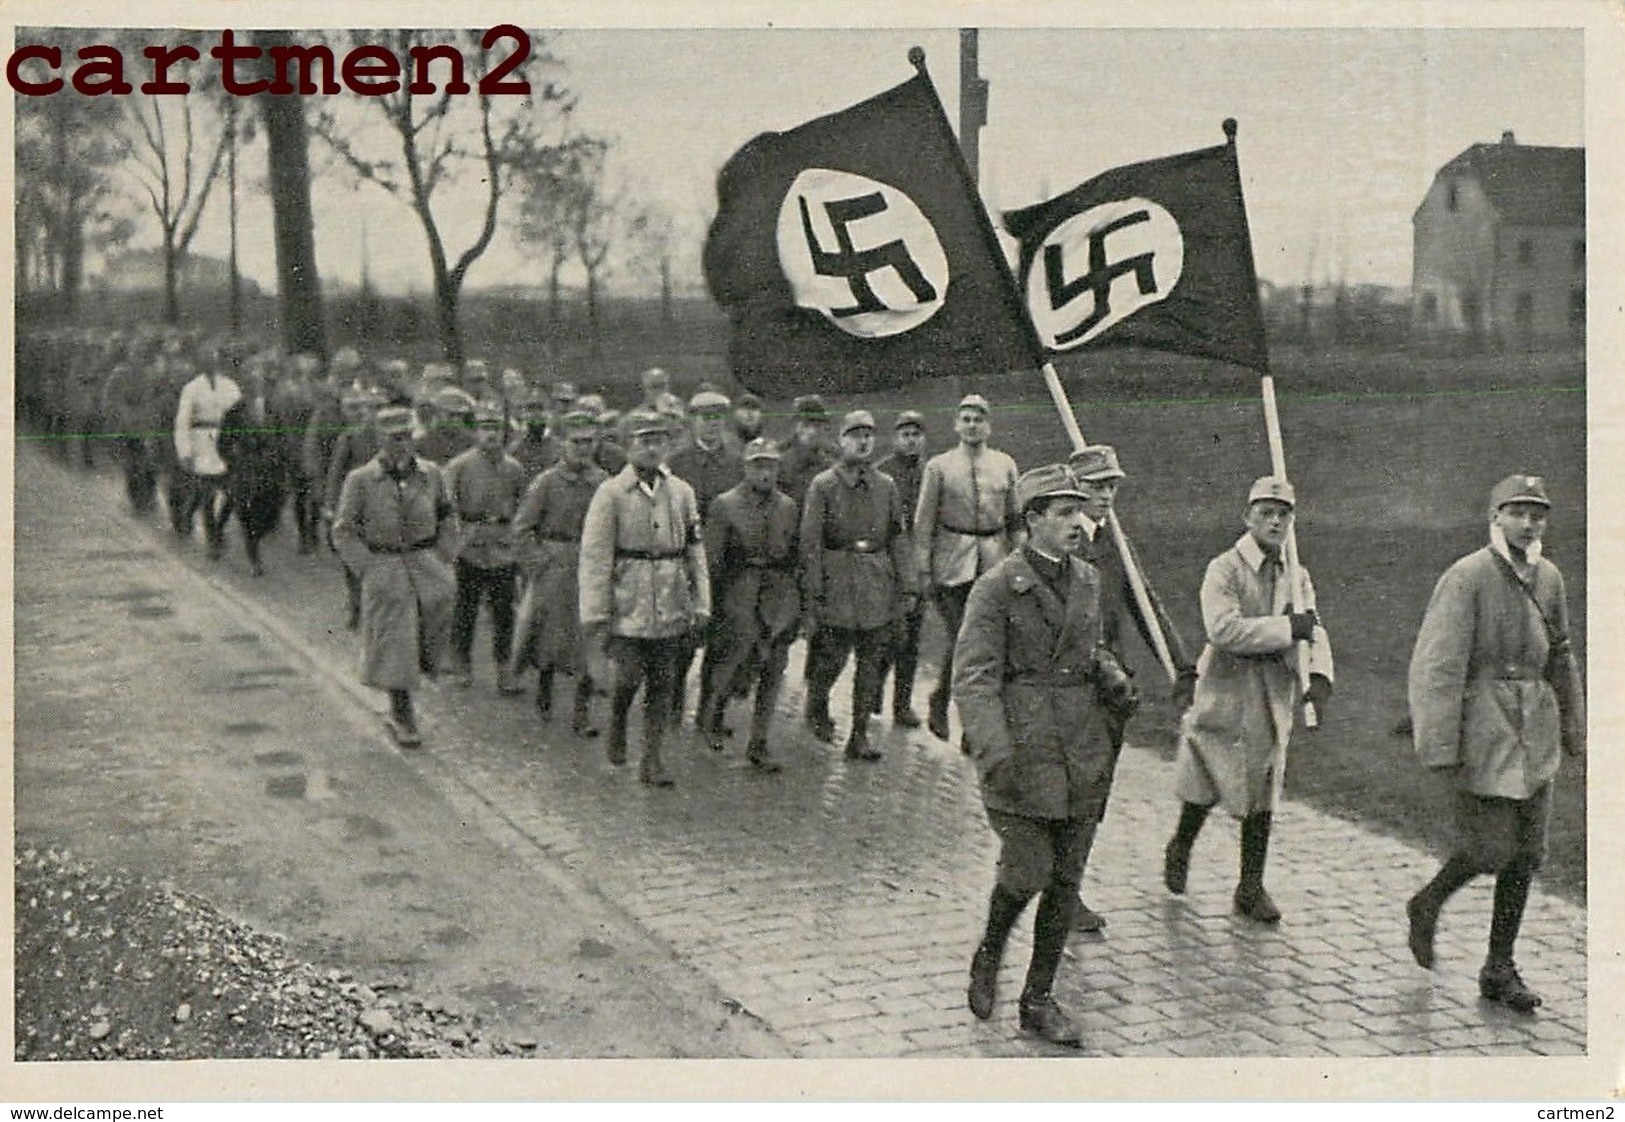 31 PHOTO NAZISME FÜHRER ADOLF HITLER NAZISME PROPAGANDE IIIe REICH WEHRMACHT KRIEG GOEBBELS MÜNCHEN patriotisch